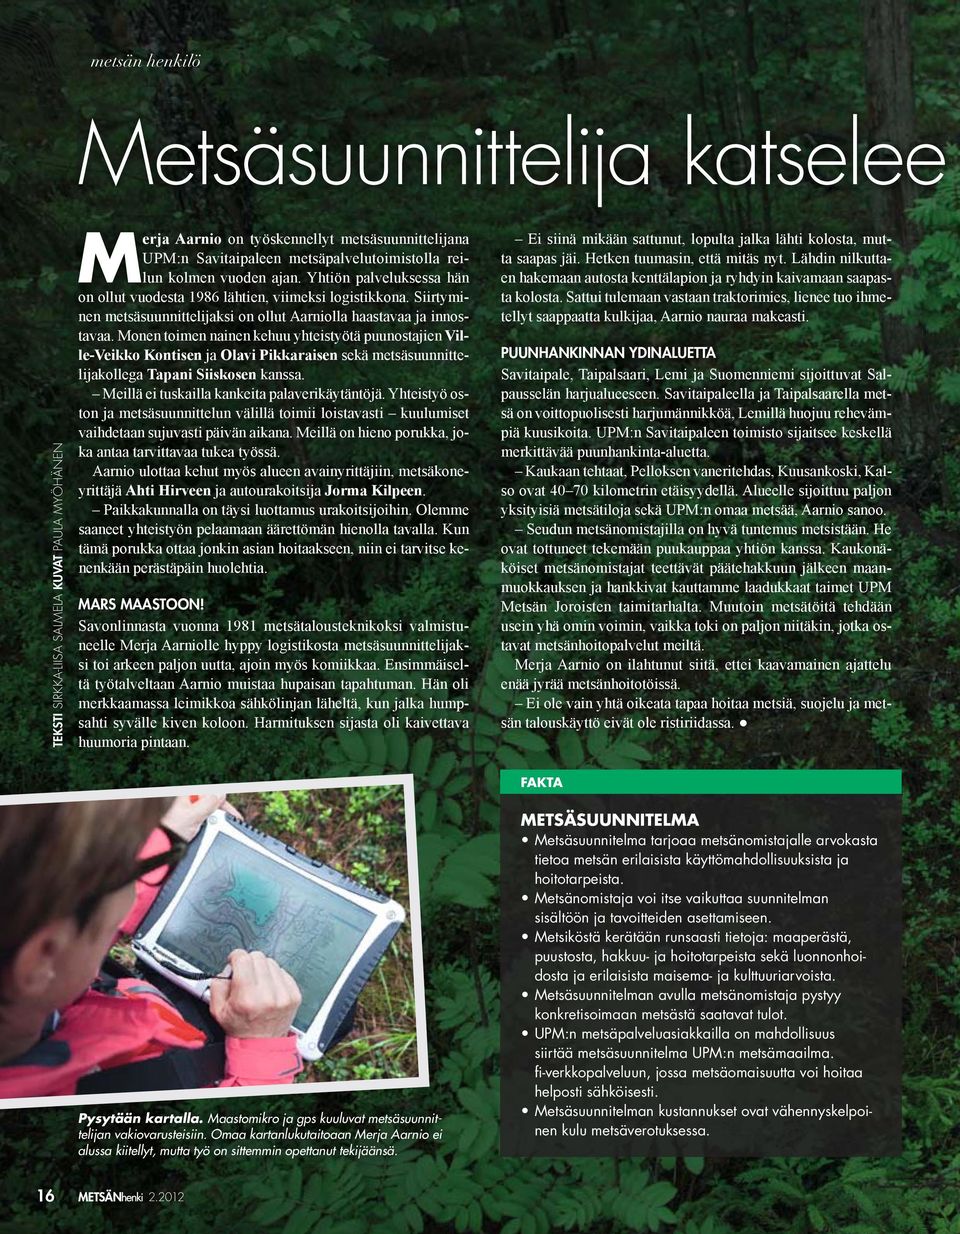 METSÄSUUNNITELMA Metsäsuunnitelma tarjoaa metsänomistajalle arvokasta tietoa metsän erilaisista käyttömahdollisuuksista ja hoitotarpeista.